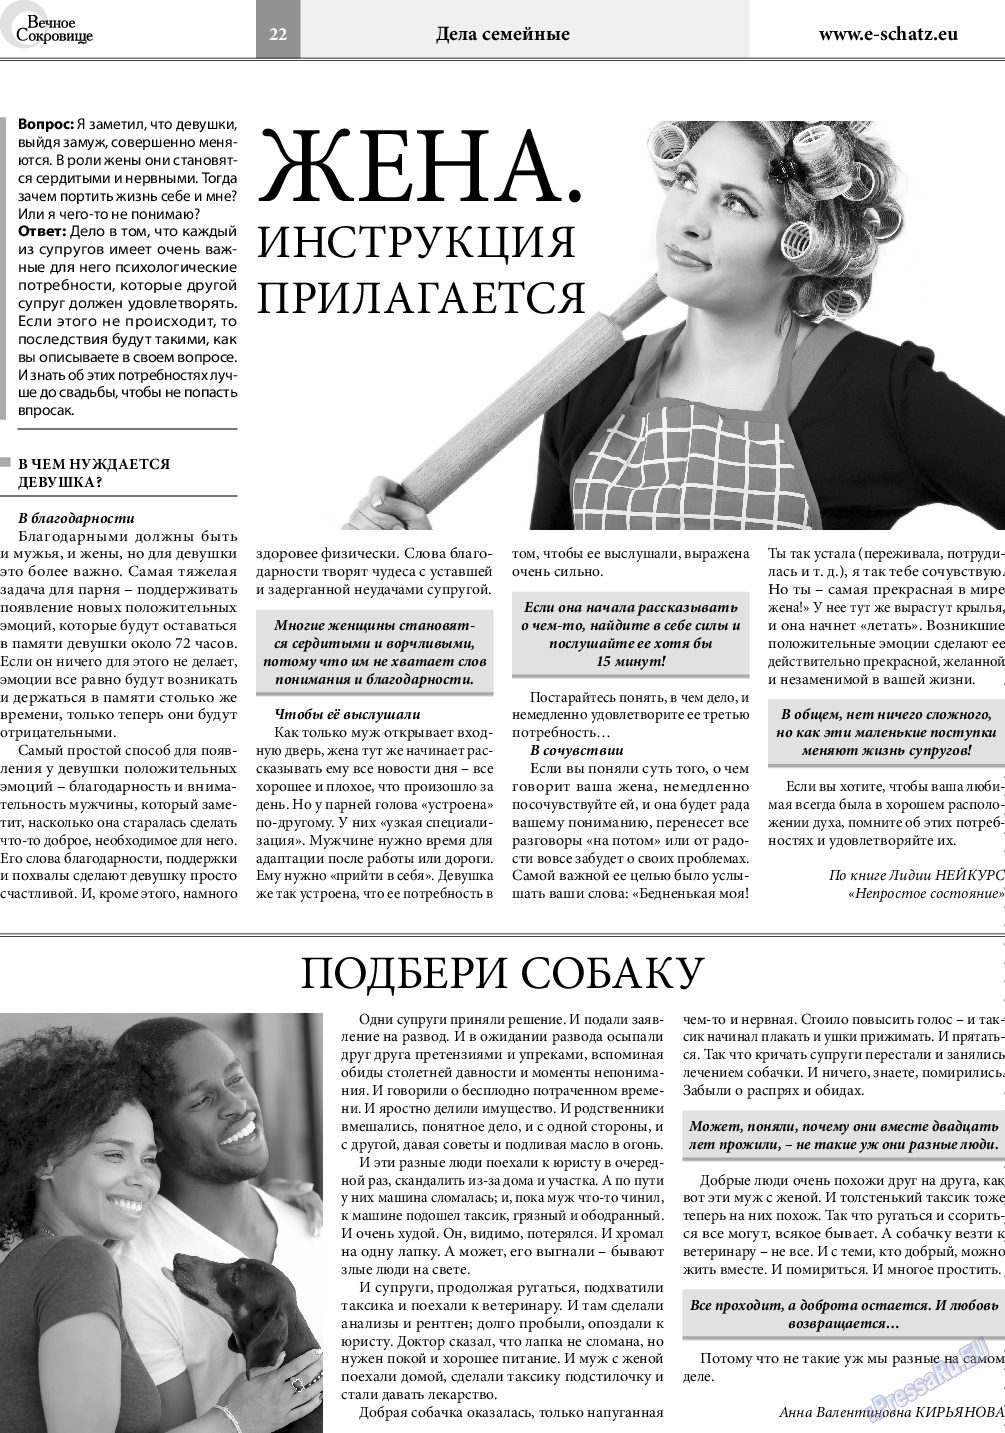 Вечное сокровище, газета. 2019 №6 стр.22